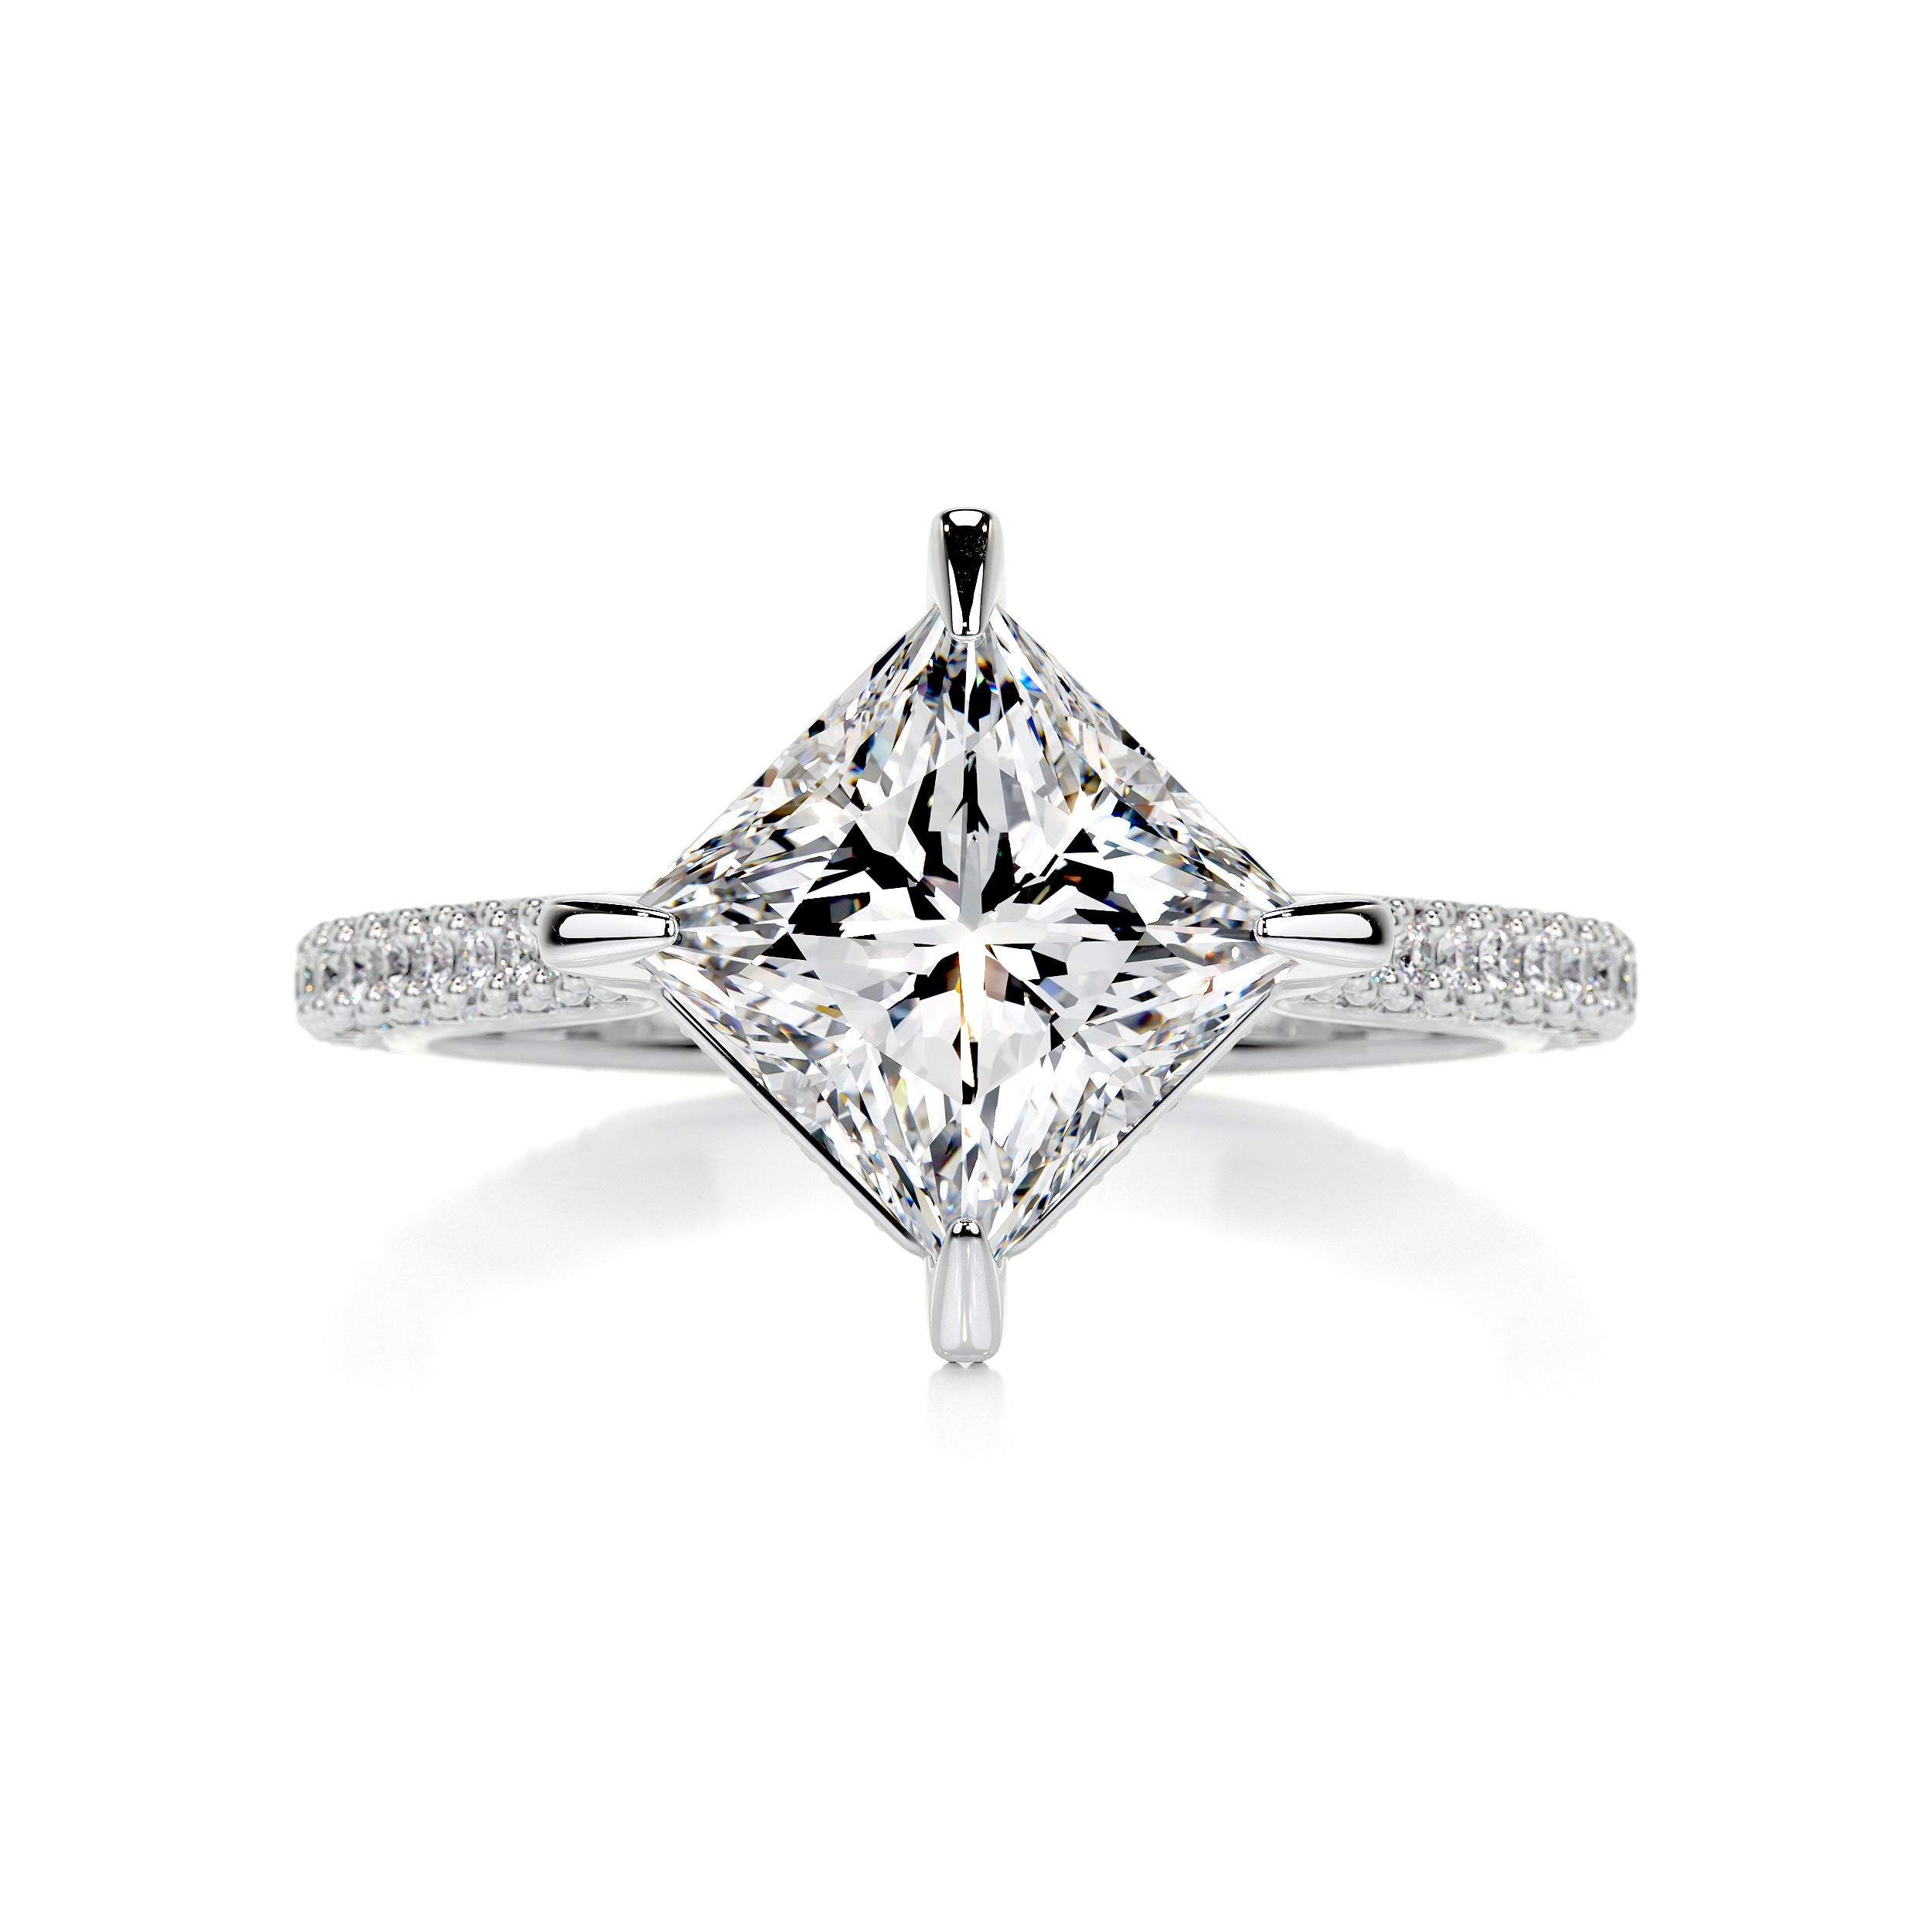 Jocelyn Diamond Engagement Ring   (2.50 Carat) -18K White Gold